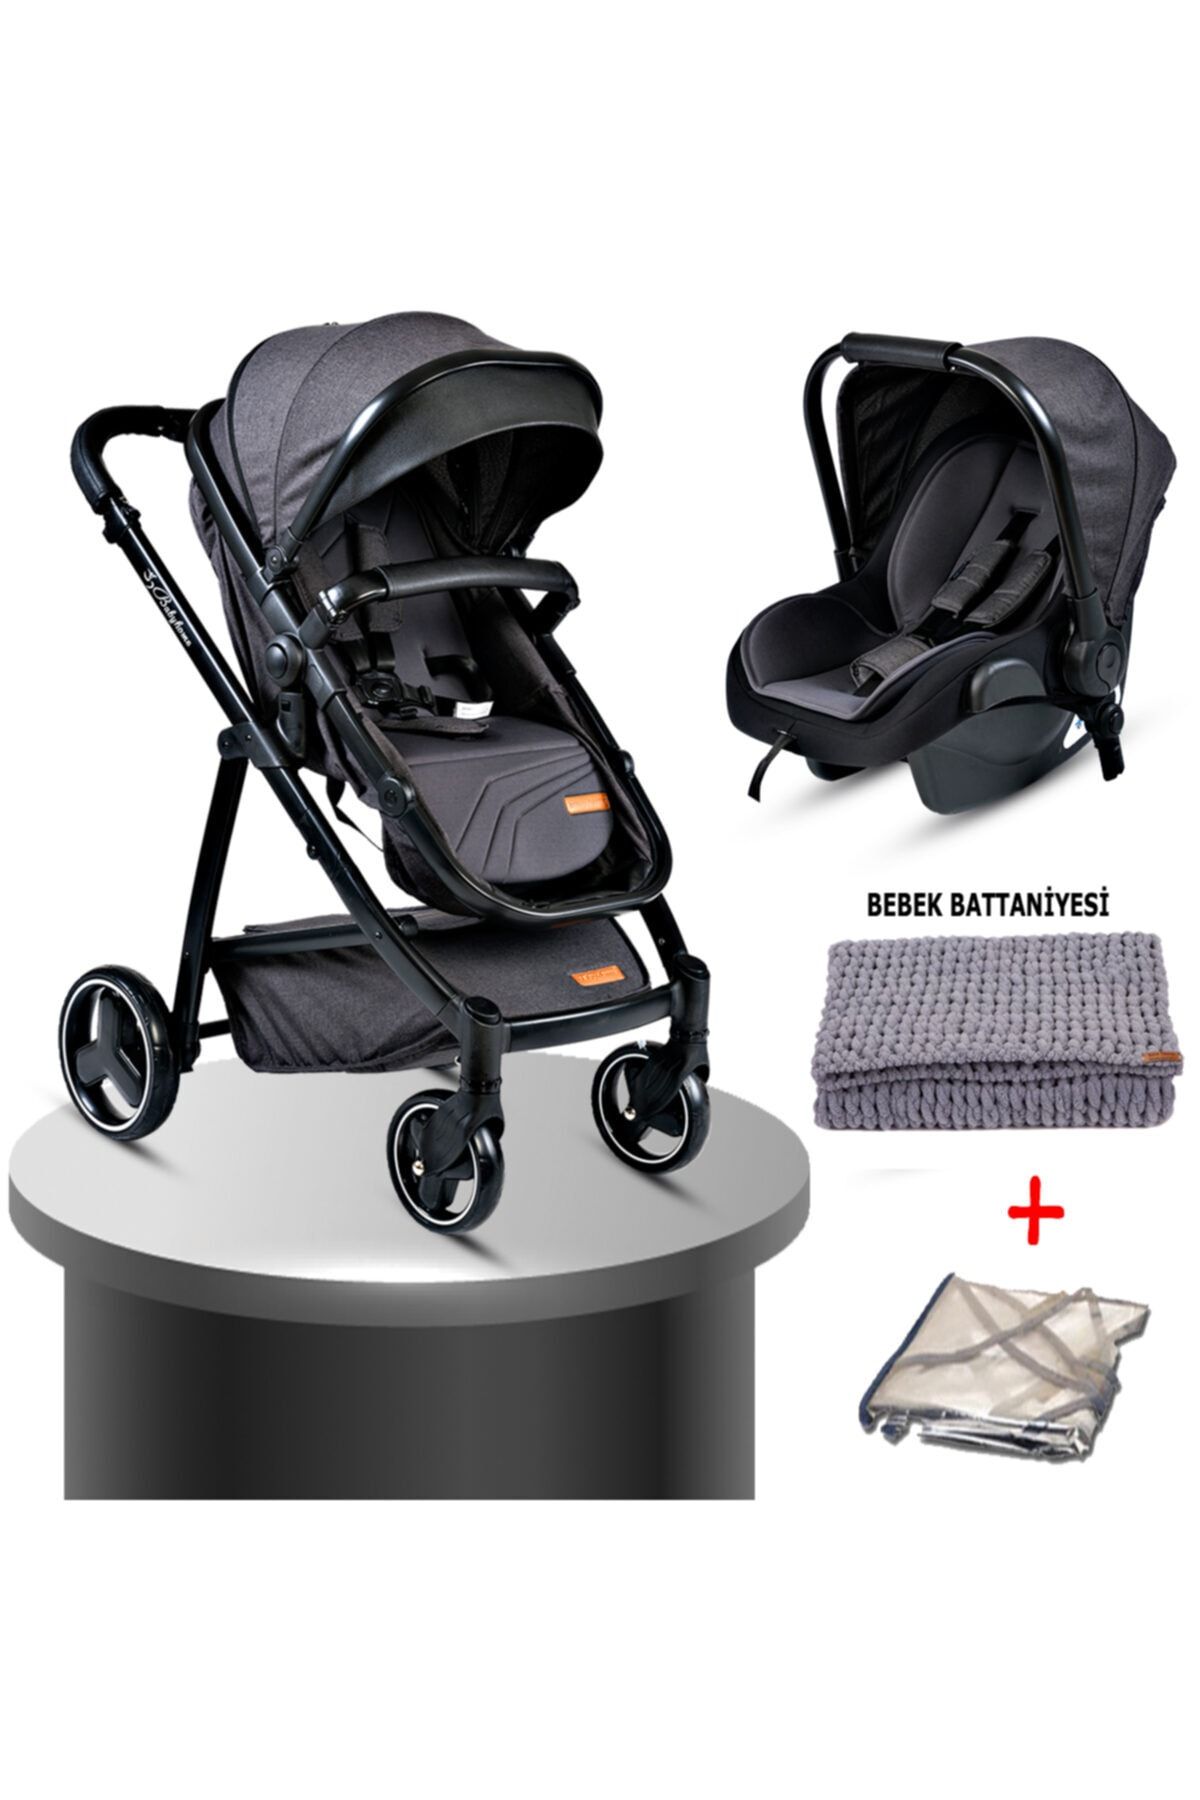 Baby Home 960 Travel Sistem Bebek Arabası + El Örmeli Bebek Battaniyesi